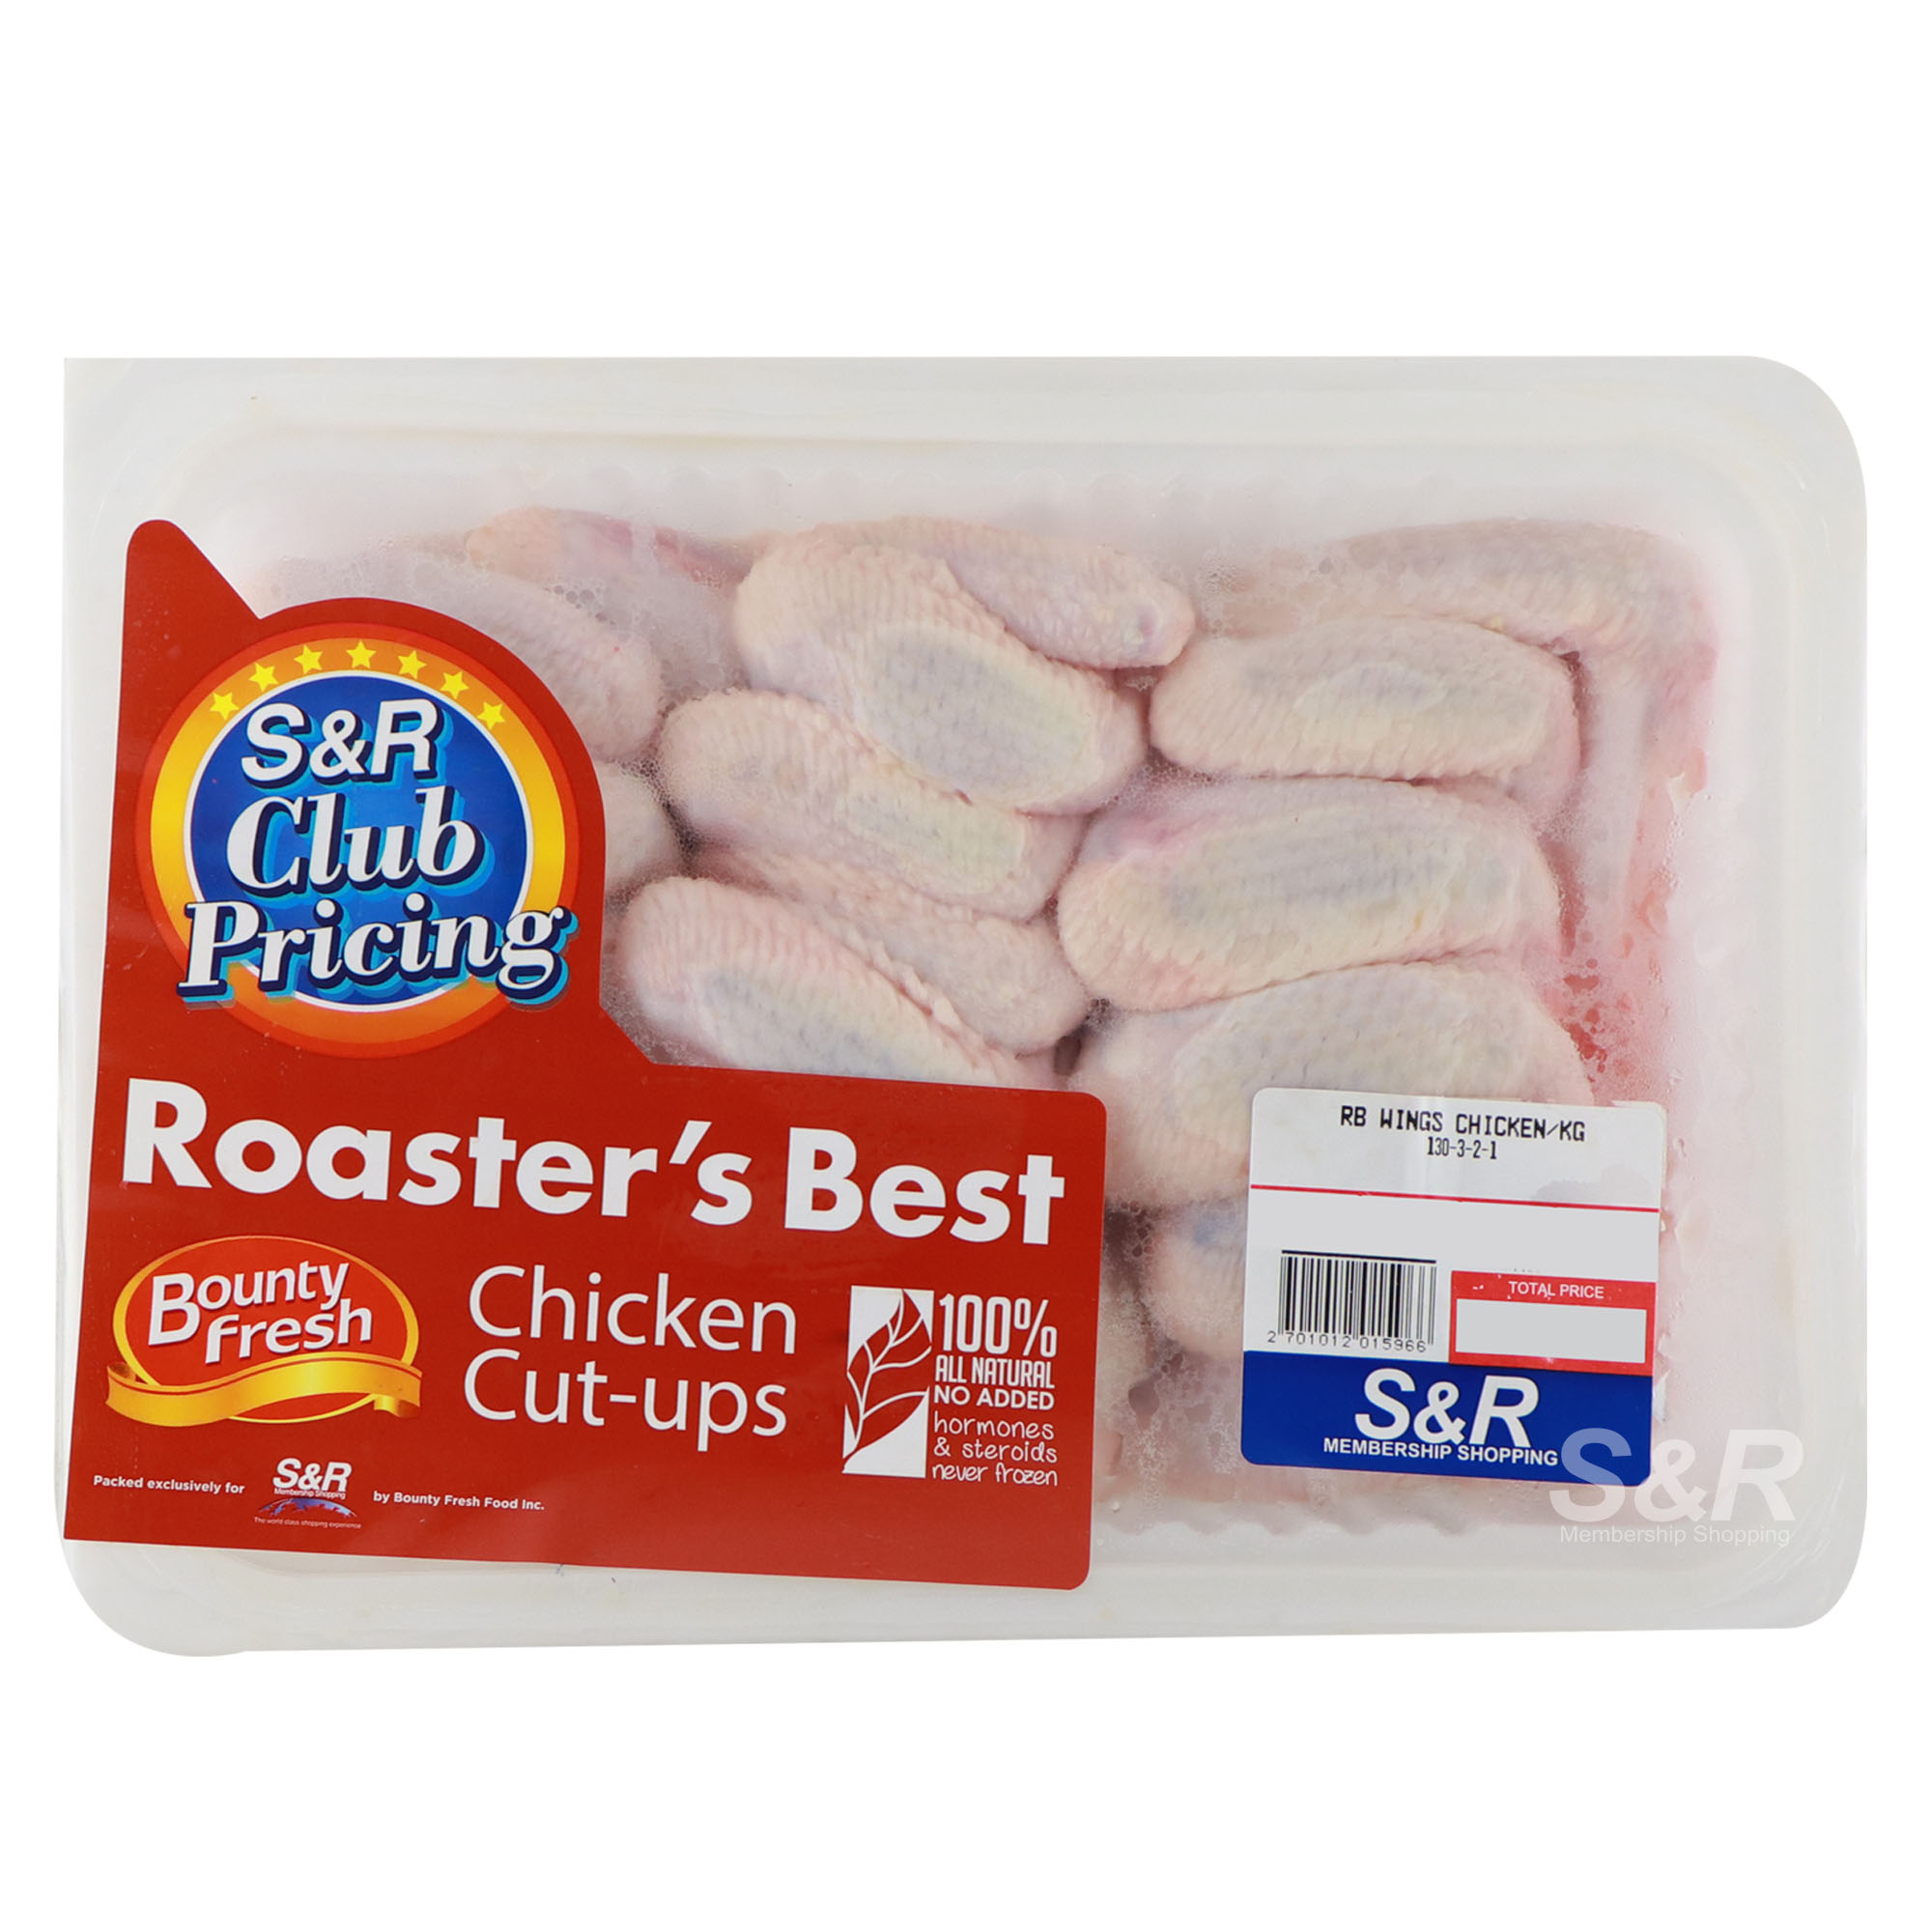 Roaster's Best Chicken Wings Cut-ups approx. 2.5kg